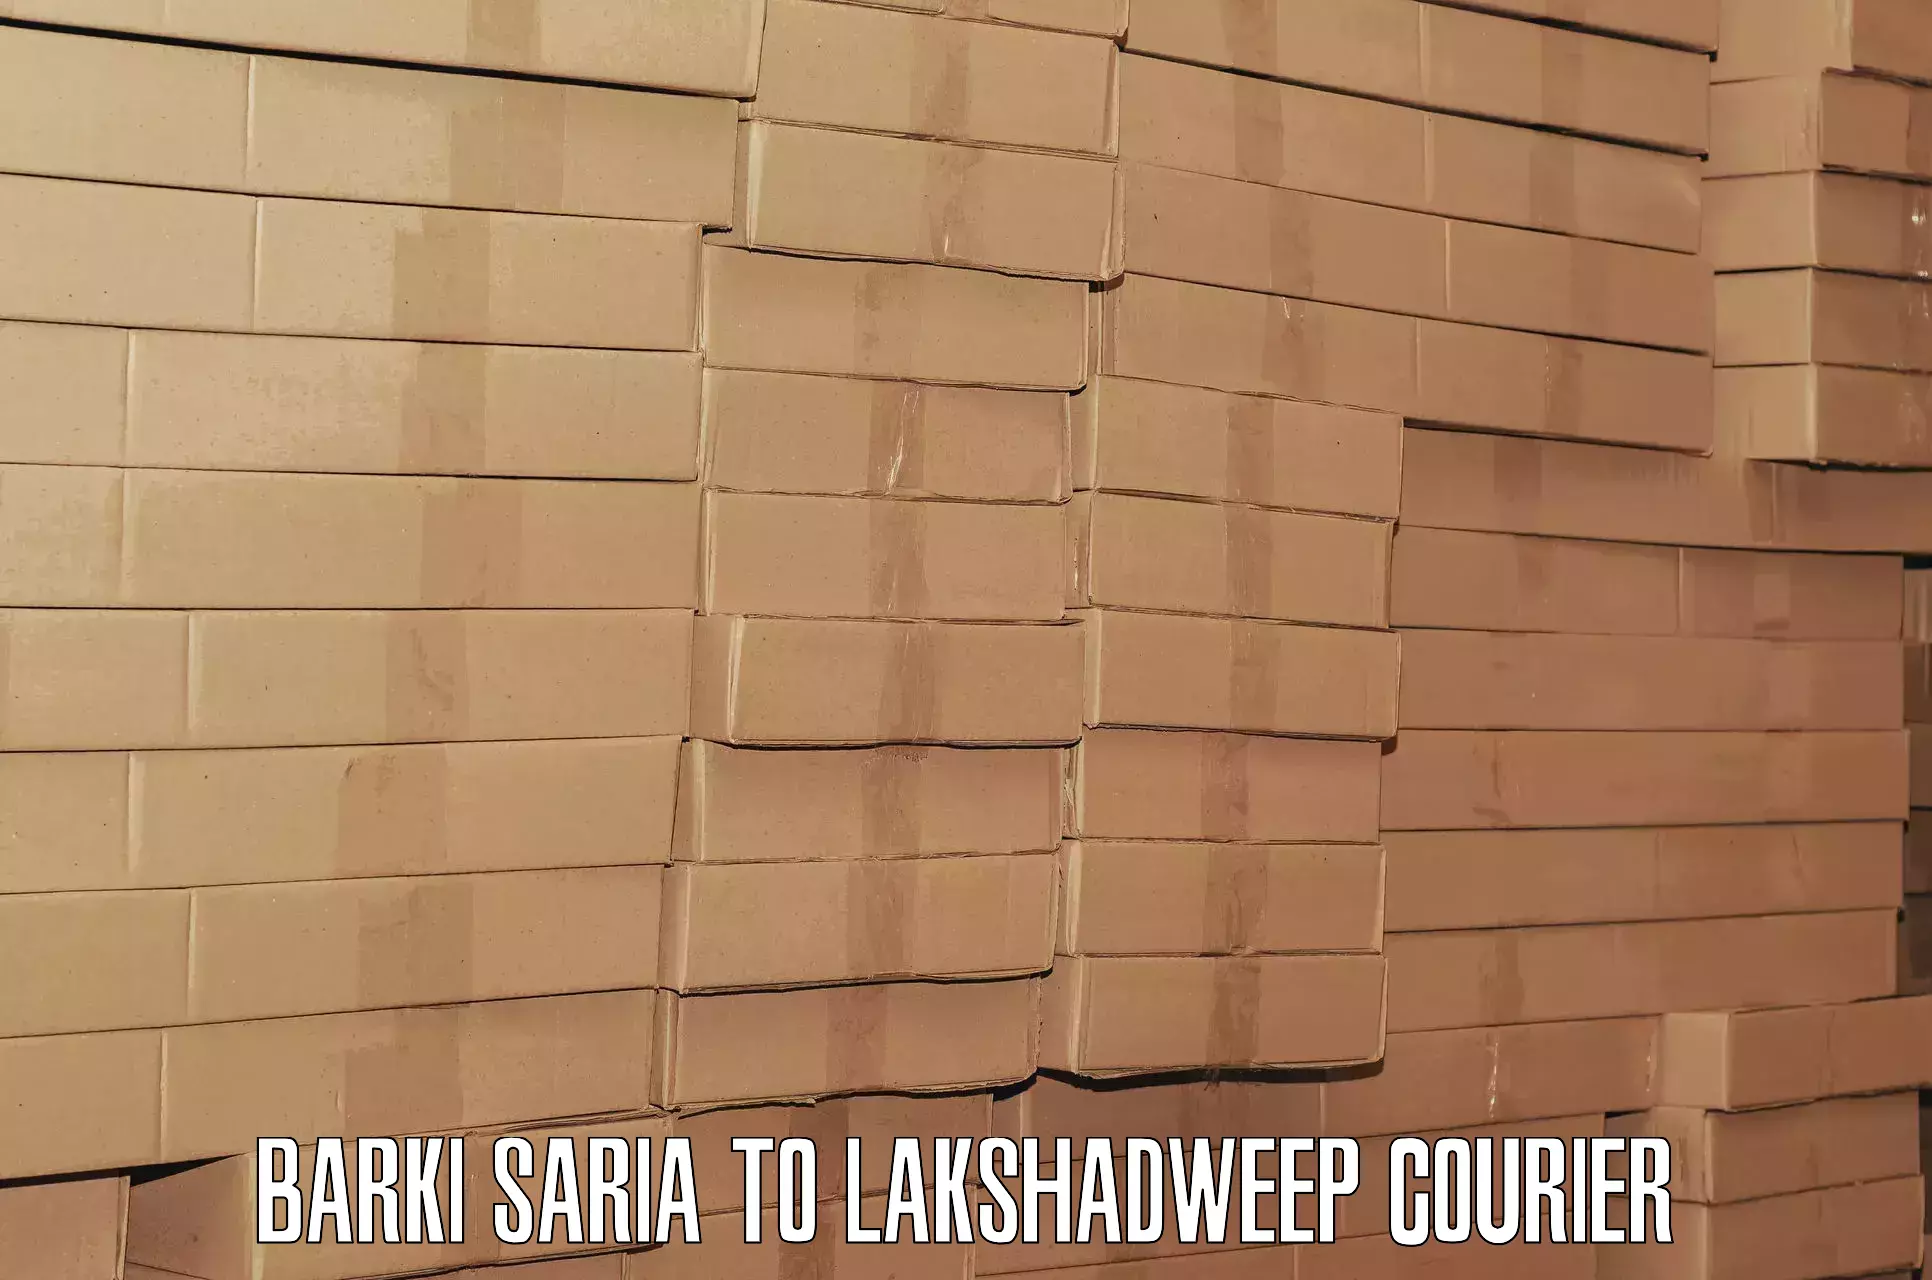 Baggage transport scheduler Barki Saria to Lakshadweep